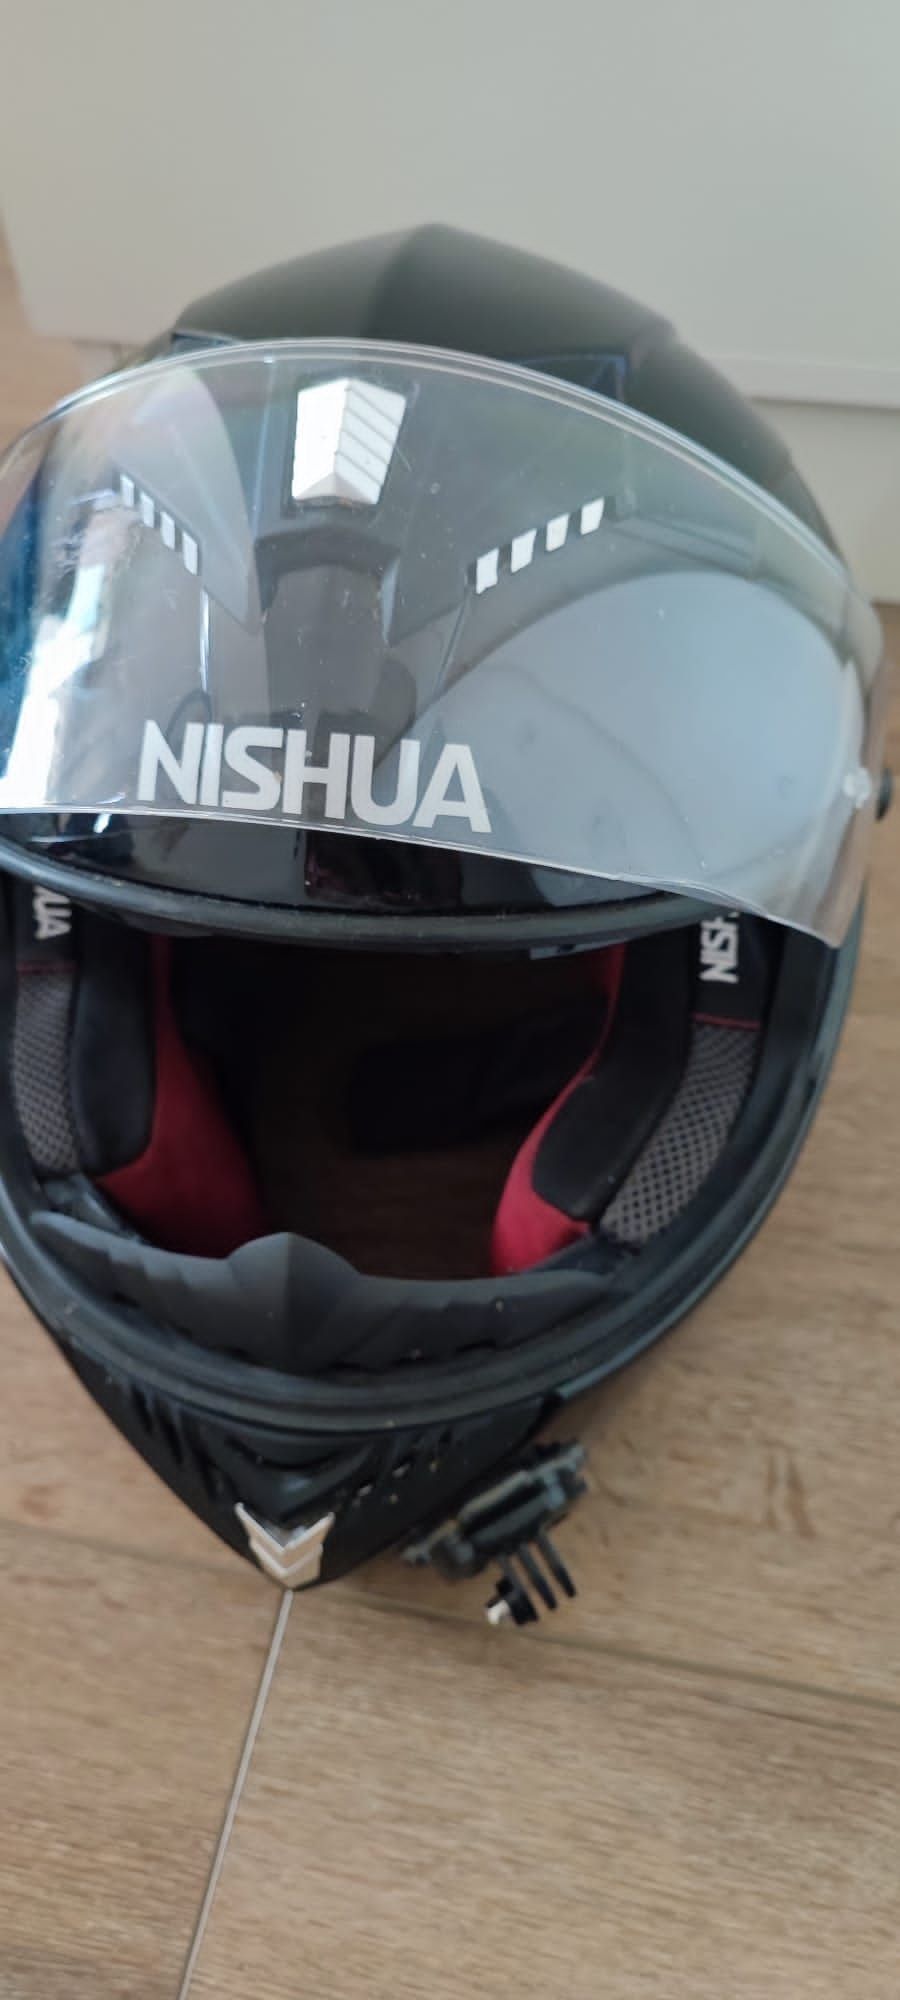 Casă moto Nishua